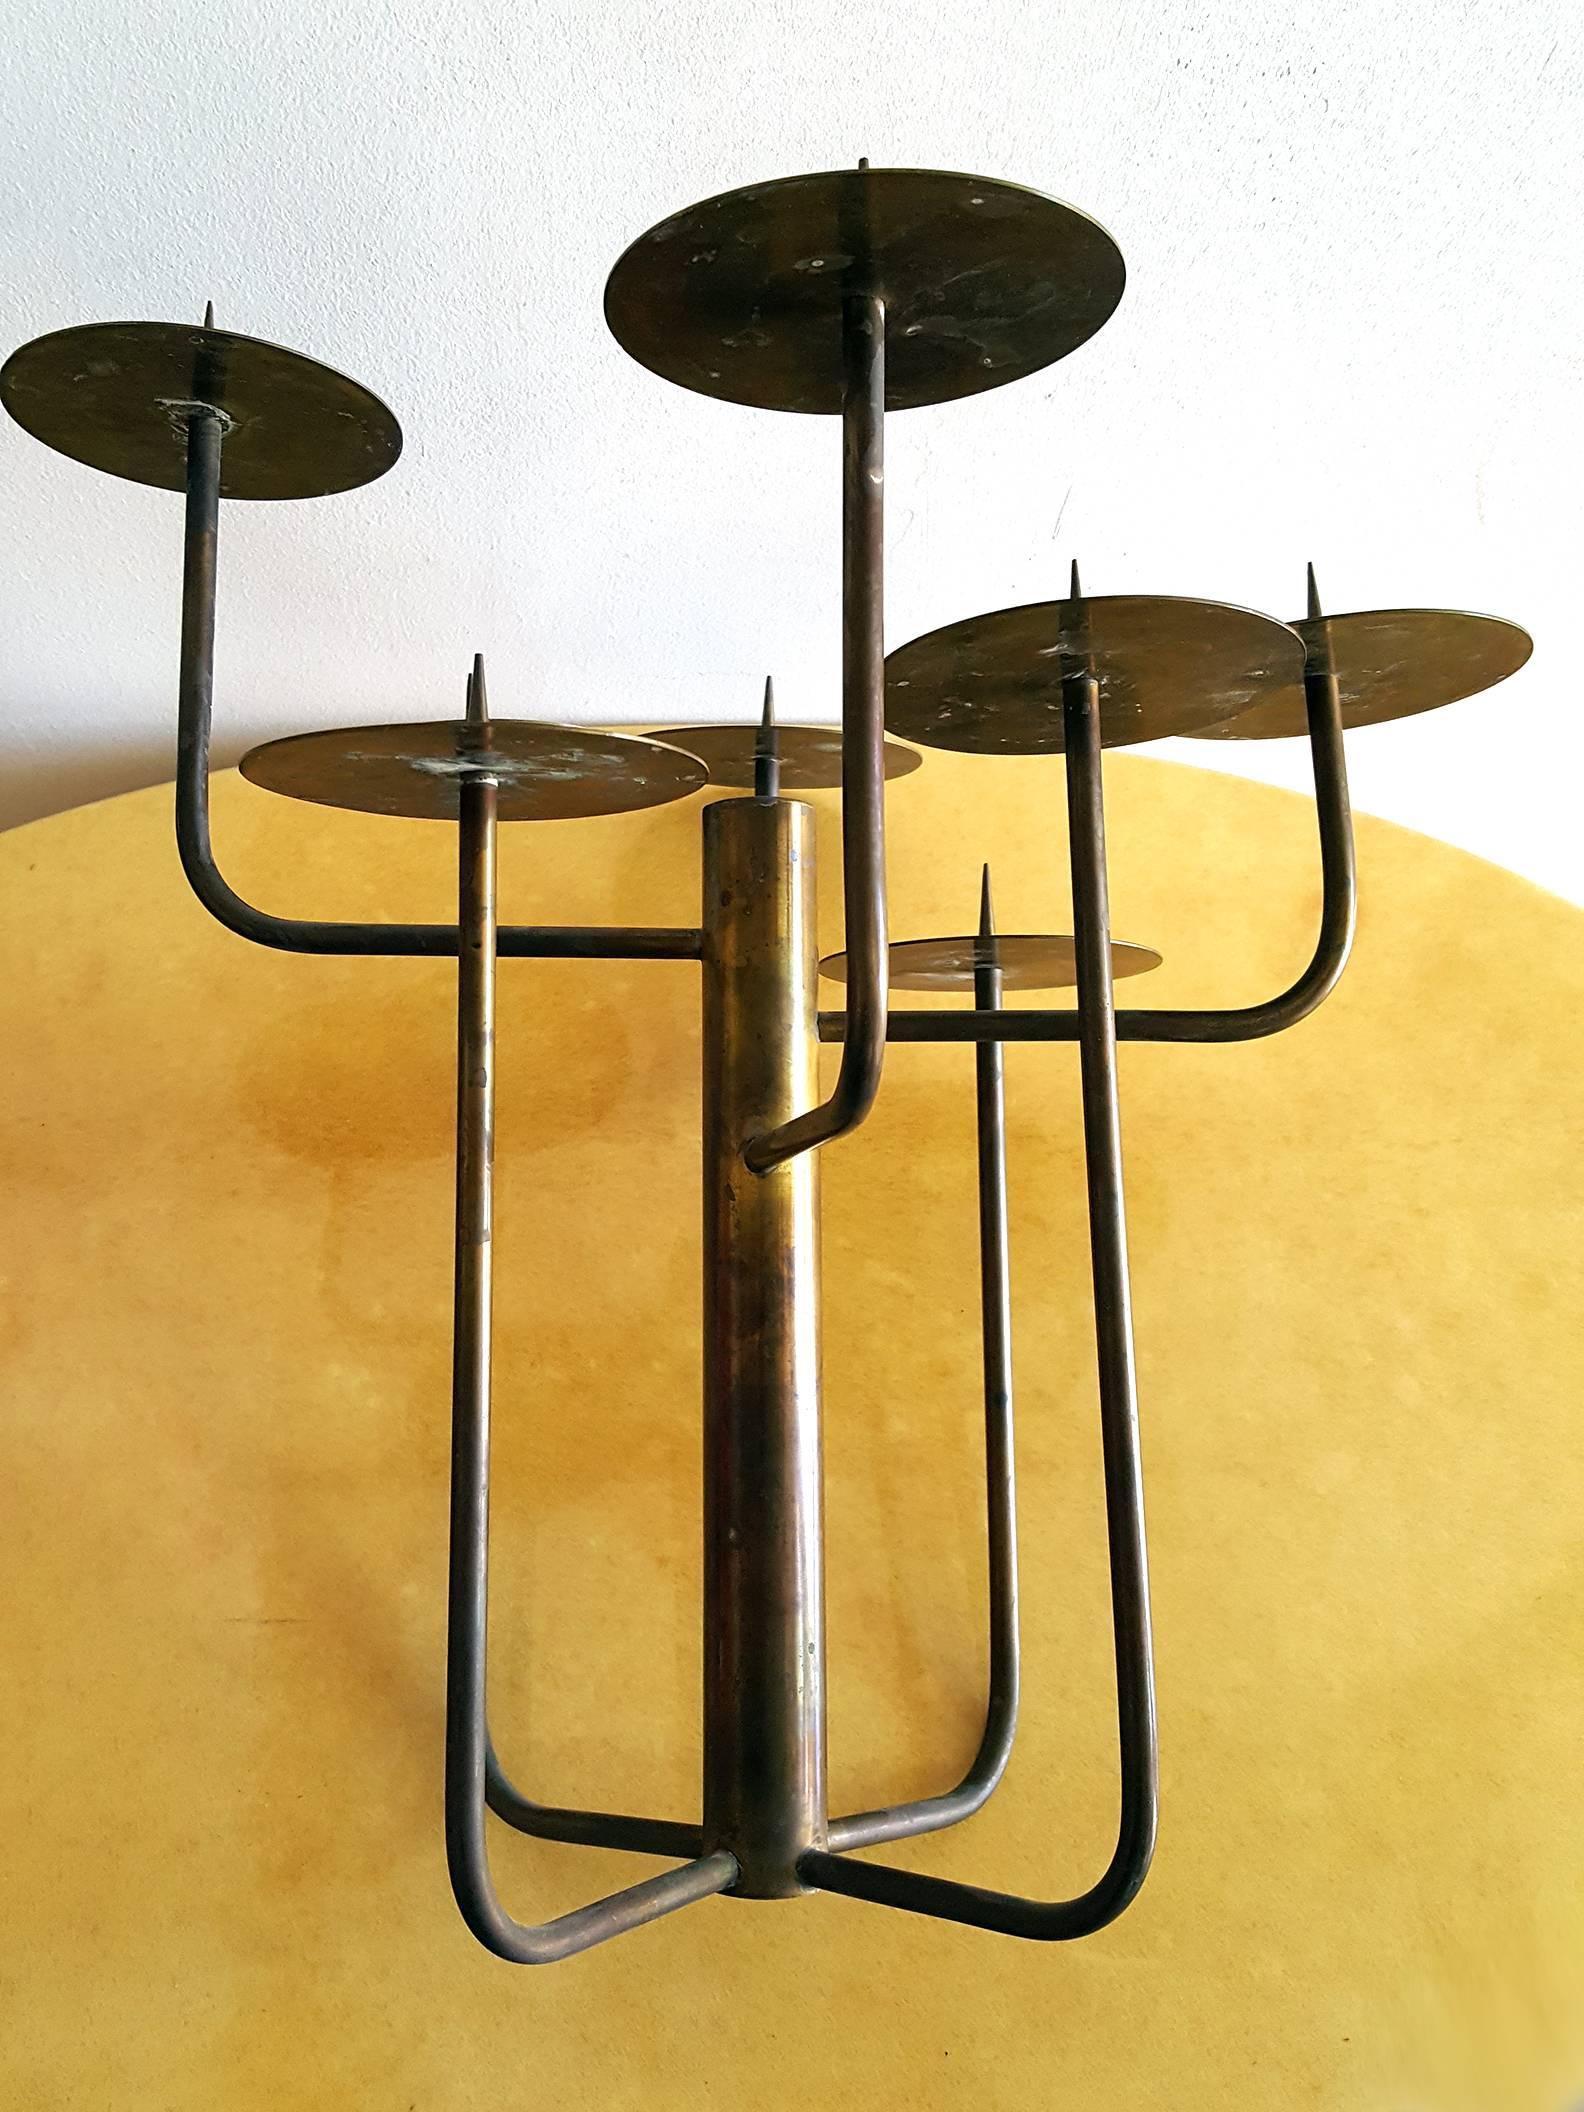 chandelier de studio en laiton des années 1950 composé de huit bras en laiton émanant de la circonférence d'une plus grande colonne centrale. Chaque tige se termine par un larmier amovible orné d'un pic en laiton massif. Belle patine.

Chaque